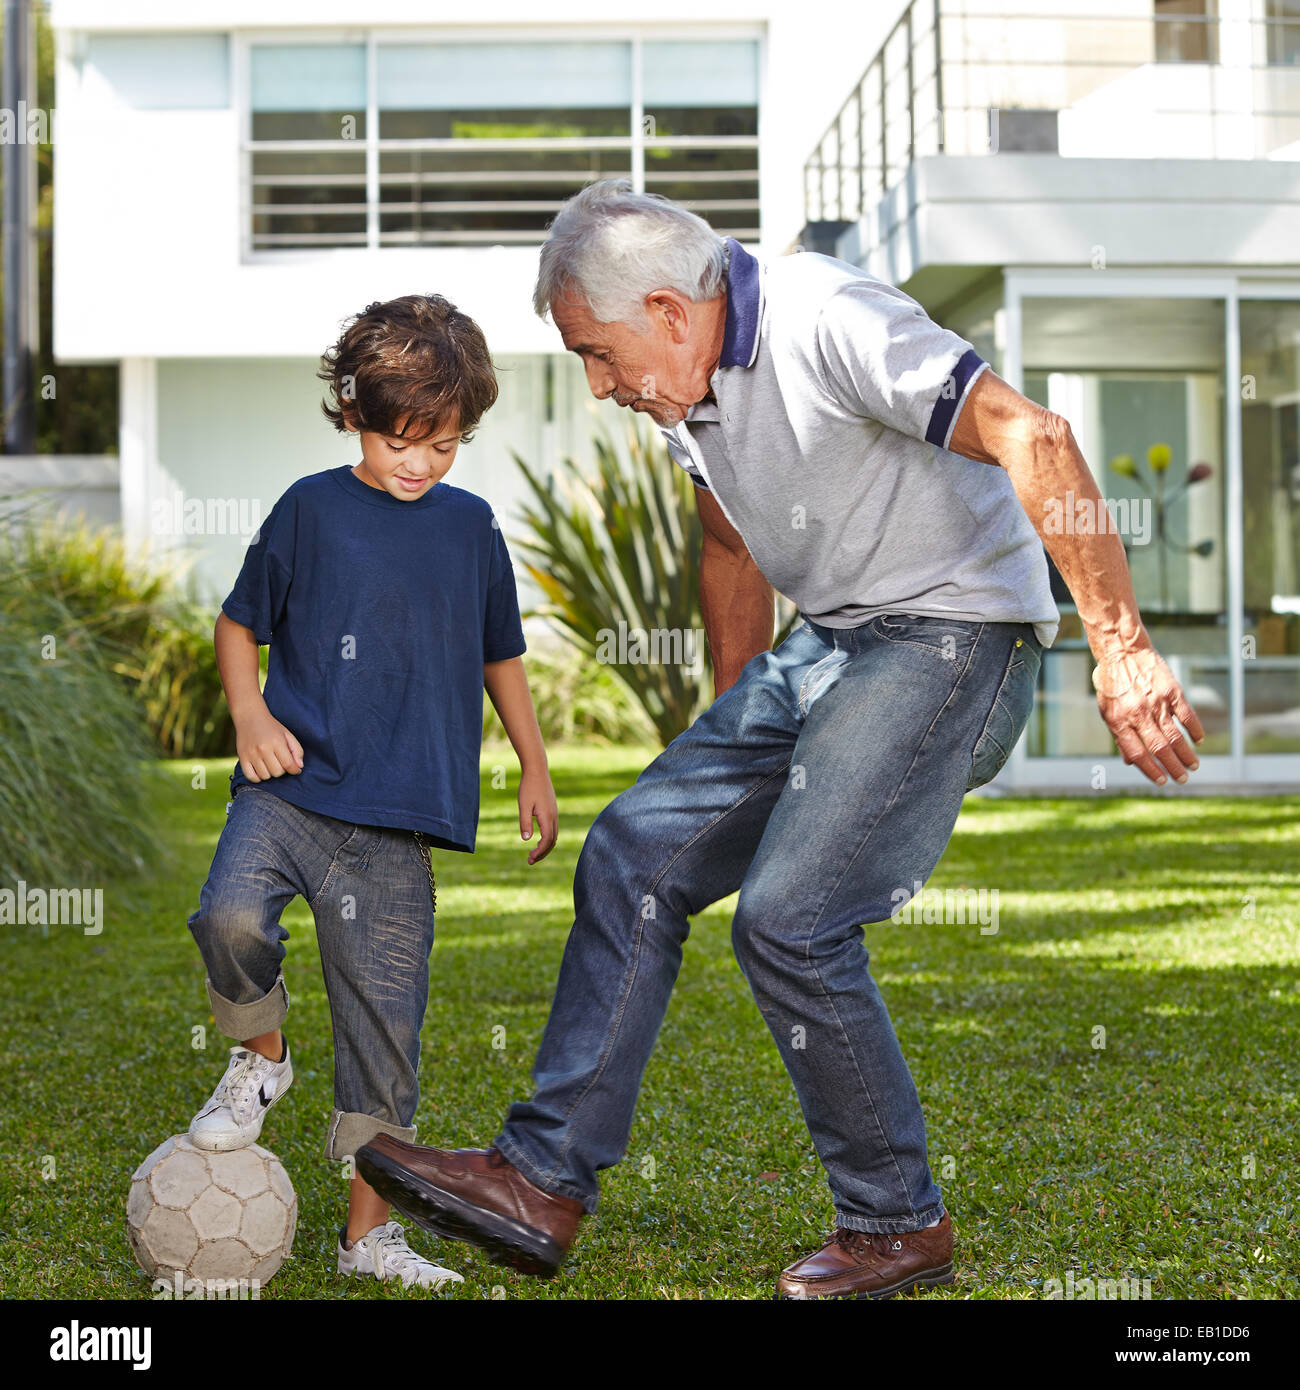 Дедушка играет в футбол. Дедушка внук футбол. Старики играют в футбол. Дед играет в футбол с внуками. Мальчик играет с дедом.